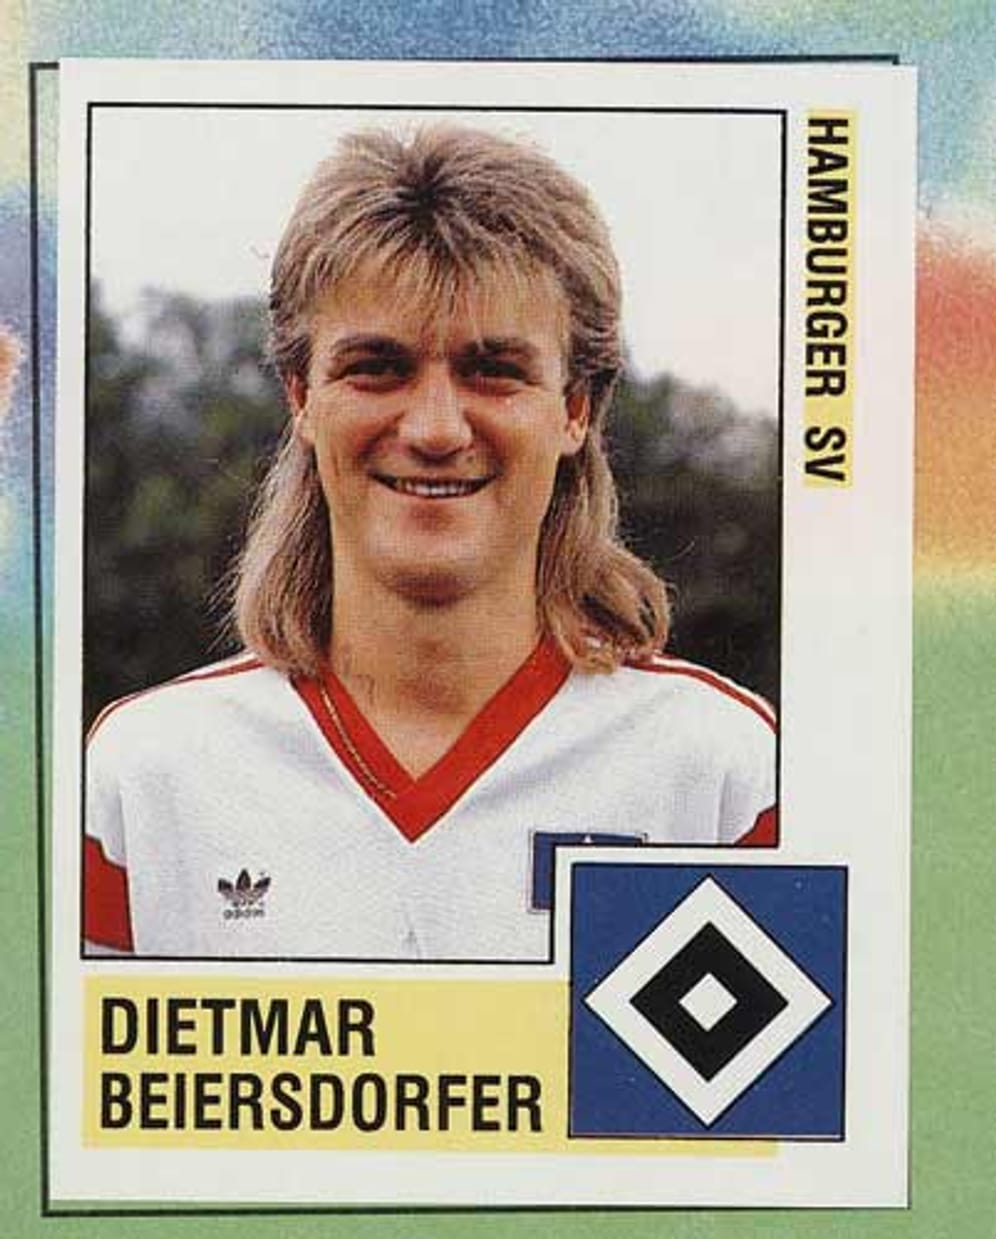 Auch Dietmar Beiersdorfer (HSV, Bremen, Köln) machte aus seiner Leidenschaft für Vokuhilas kein Geheimnis. Ab Juli ist "Didi" Vorstandsvorsitzender der HSV Fußball AG.